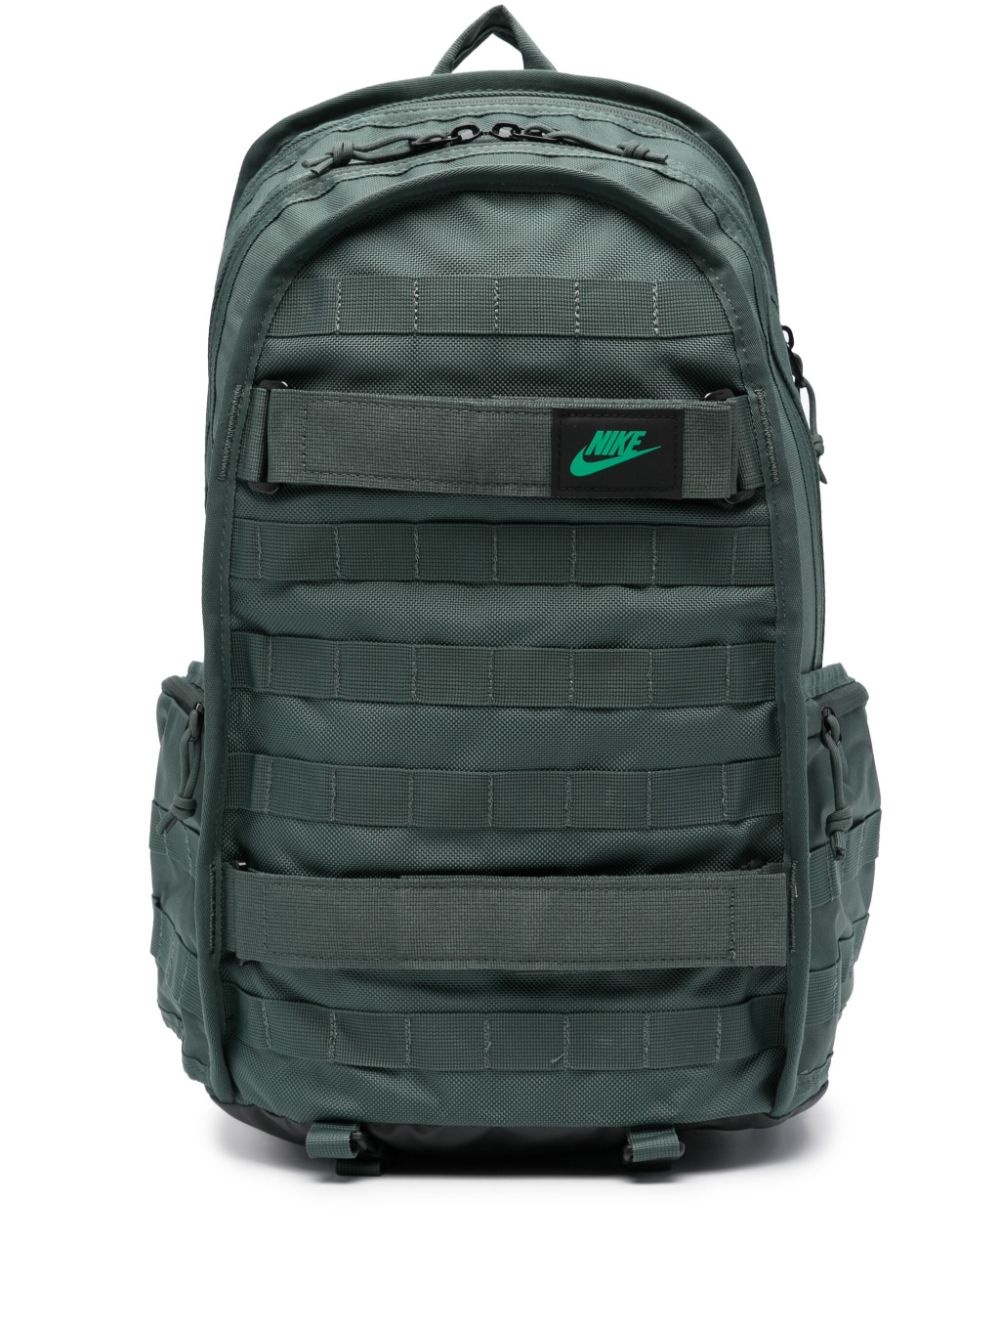 RPM loop-embellished backpack - 1